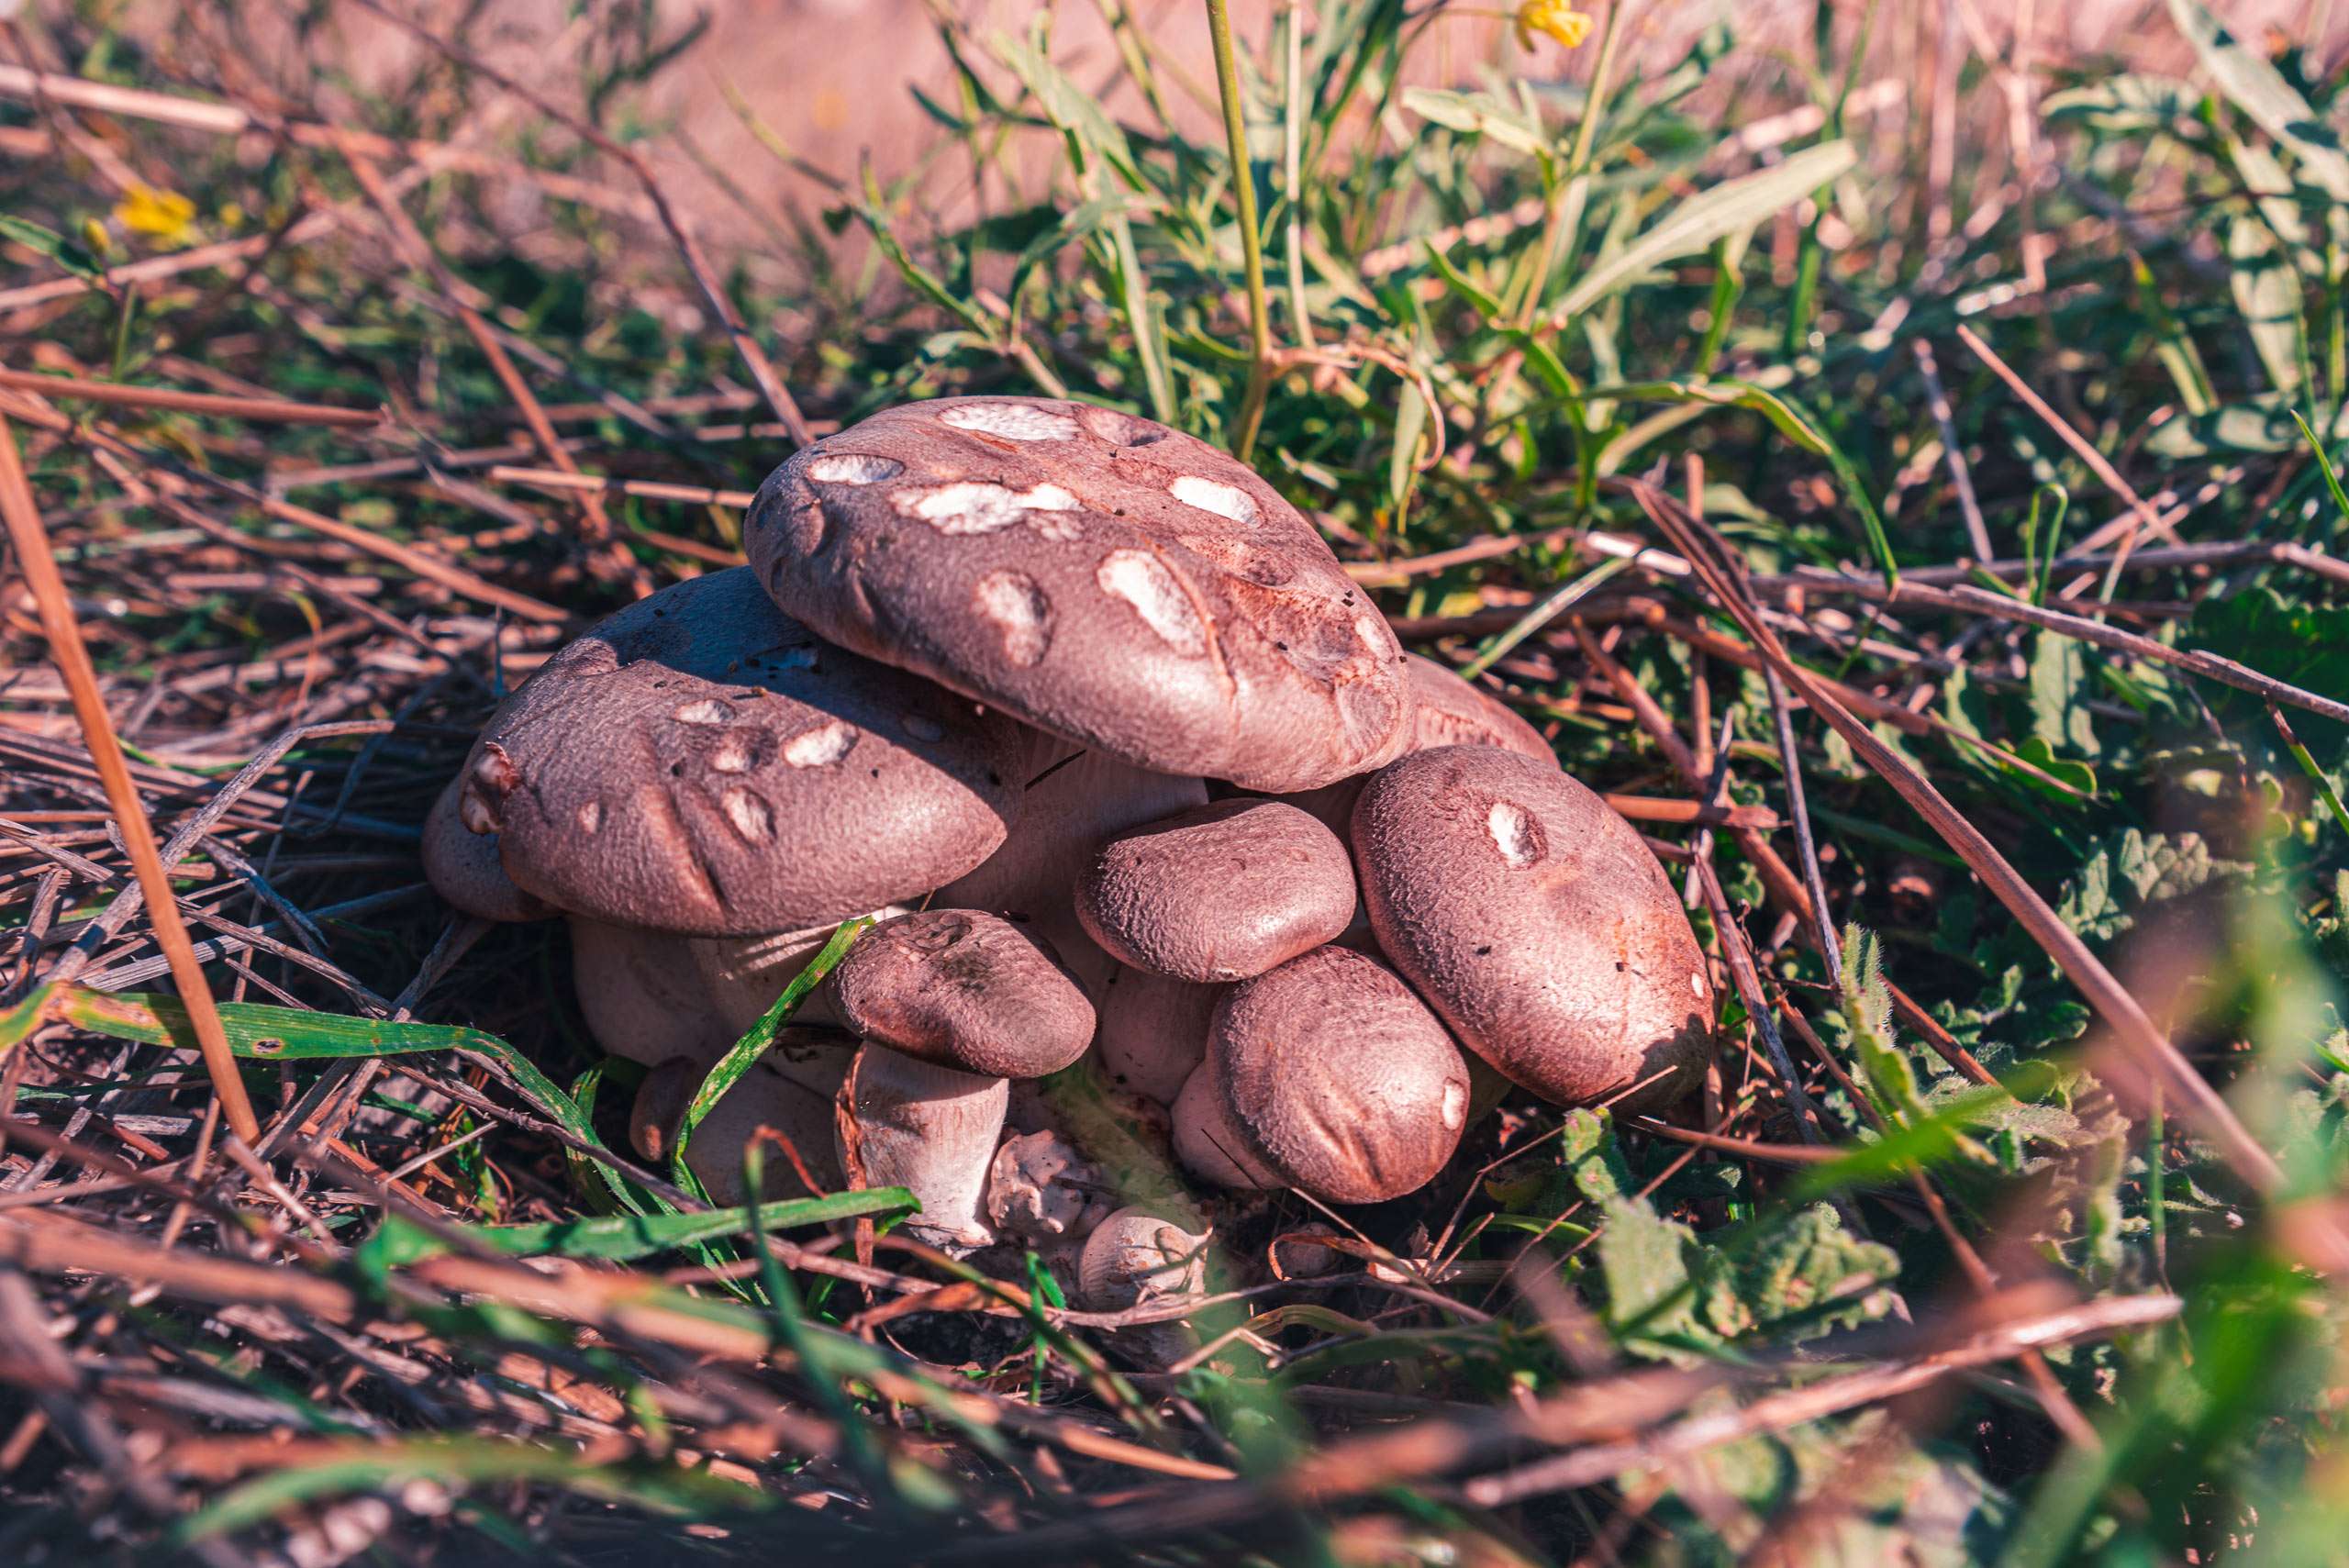 Wild Cardoncello mushrooms in Puglia.